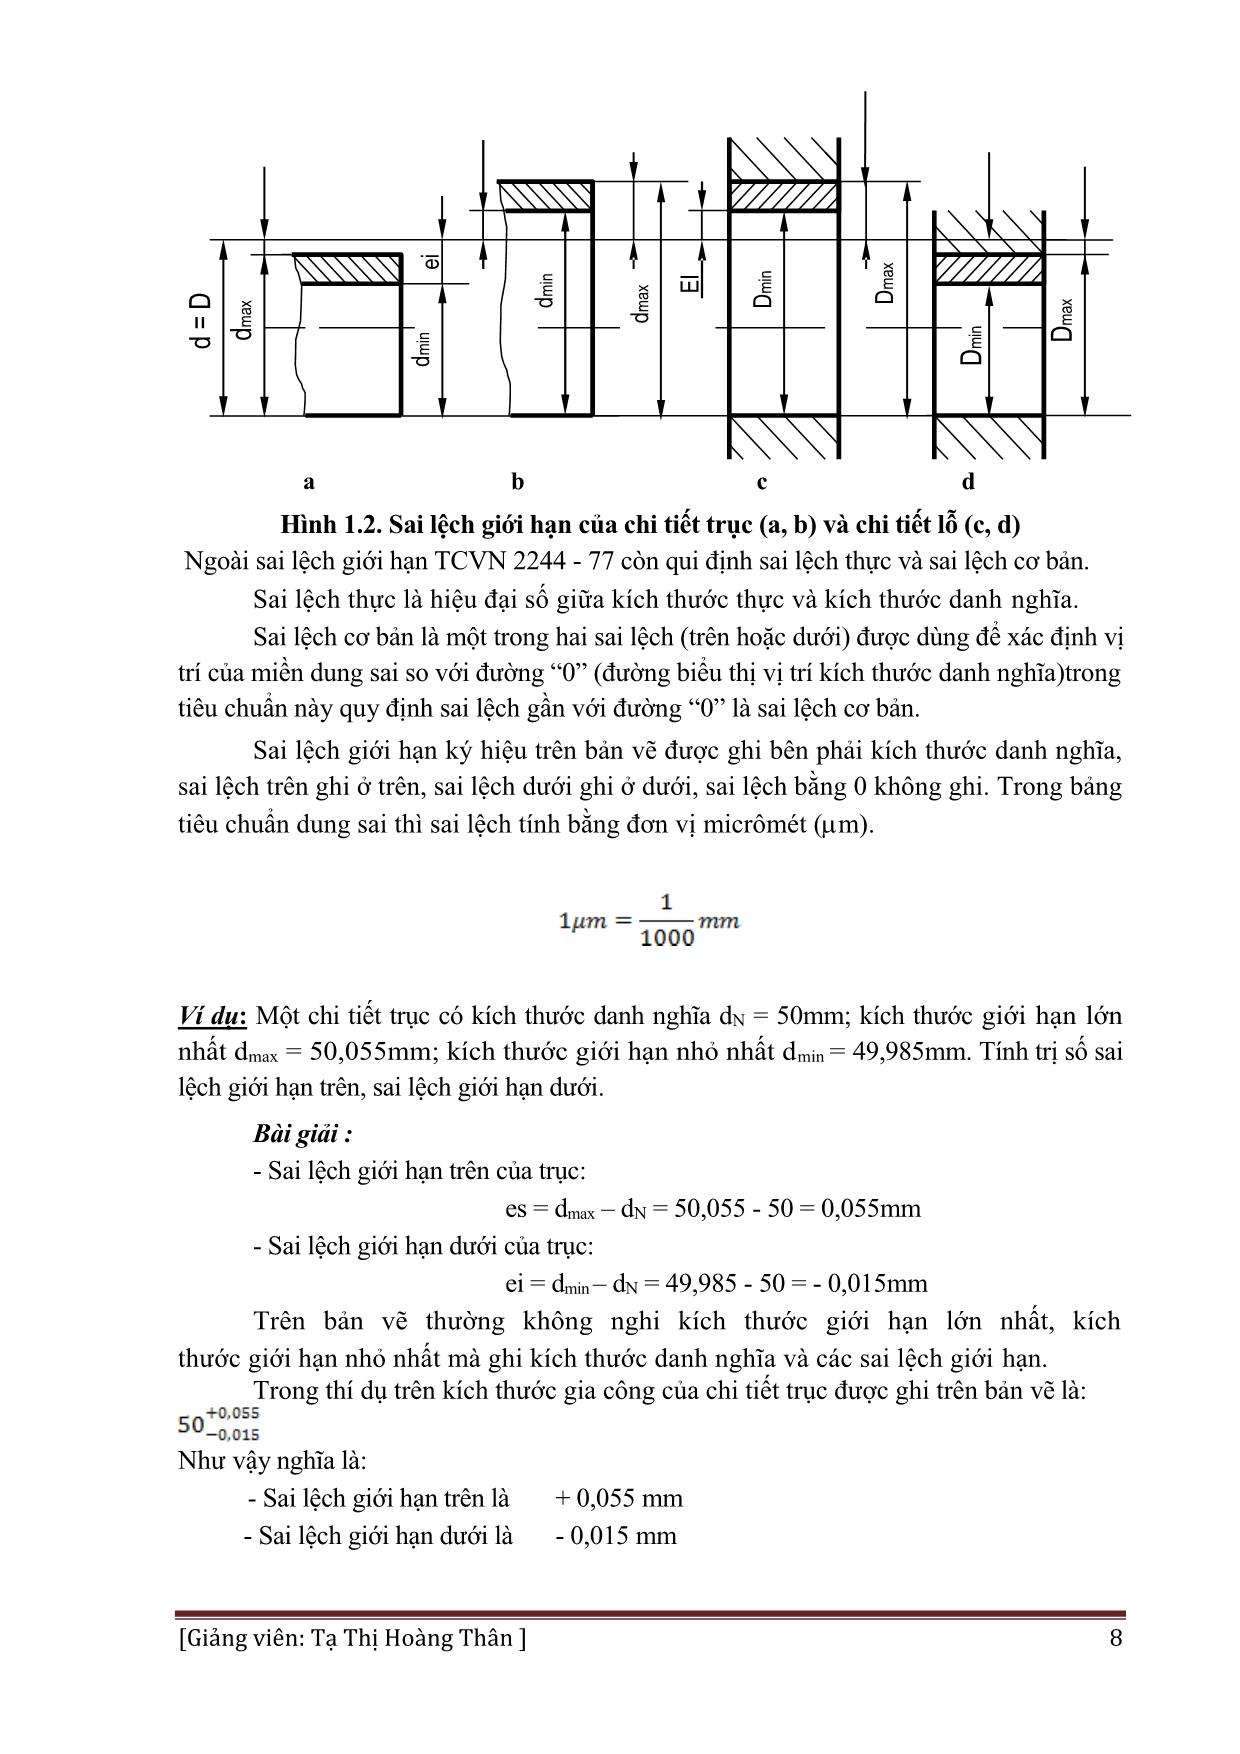 Giáo trình Dung sai lắp ghép và đo lường kỹ thuật - Nghề: Hàn trang 8